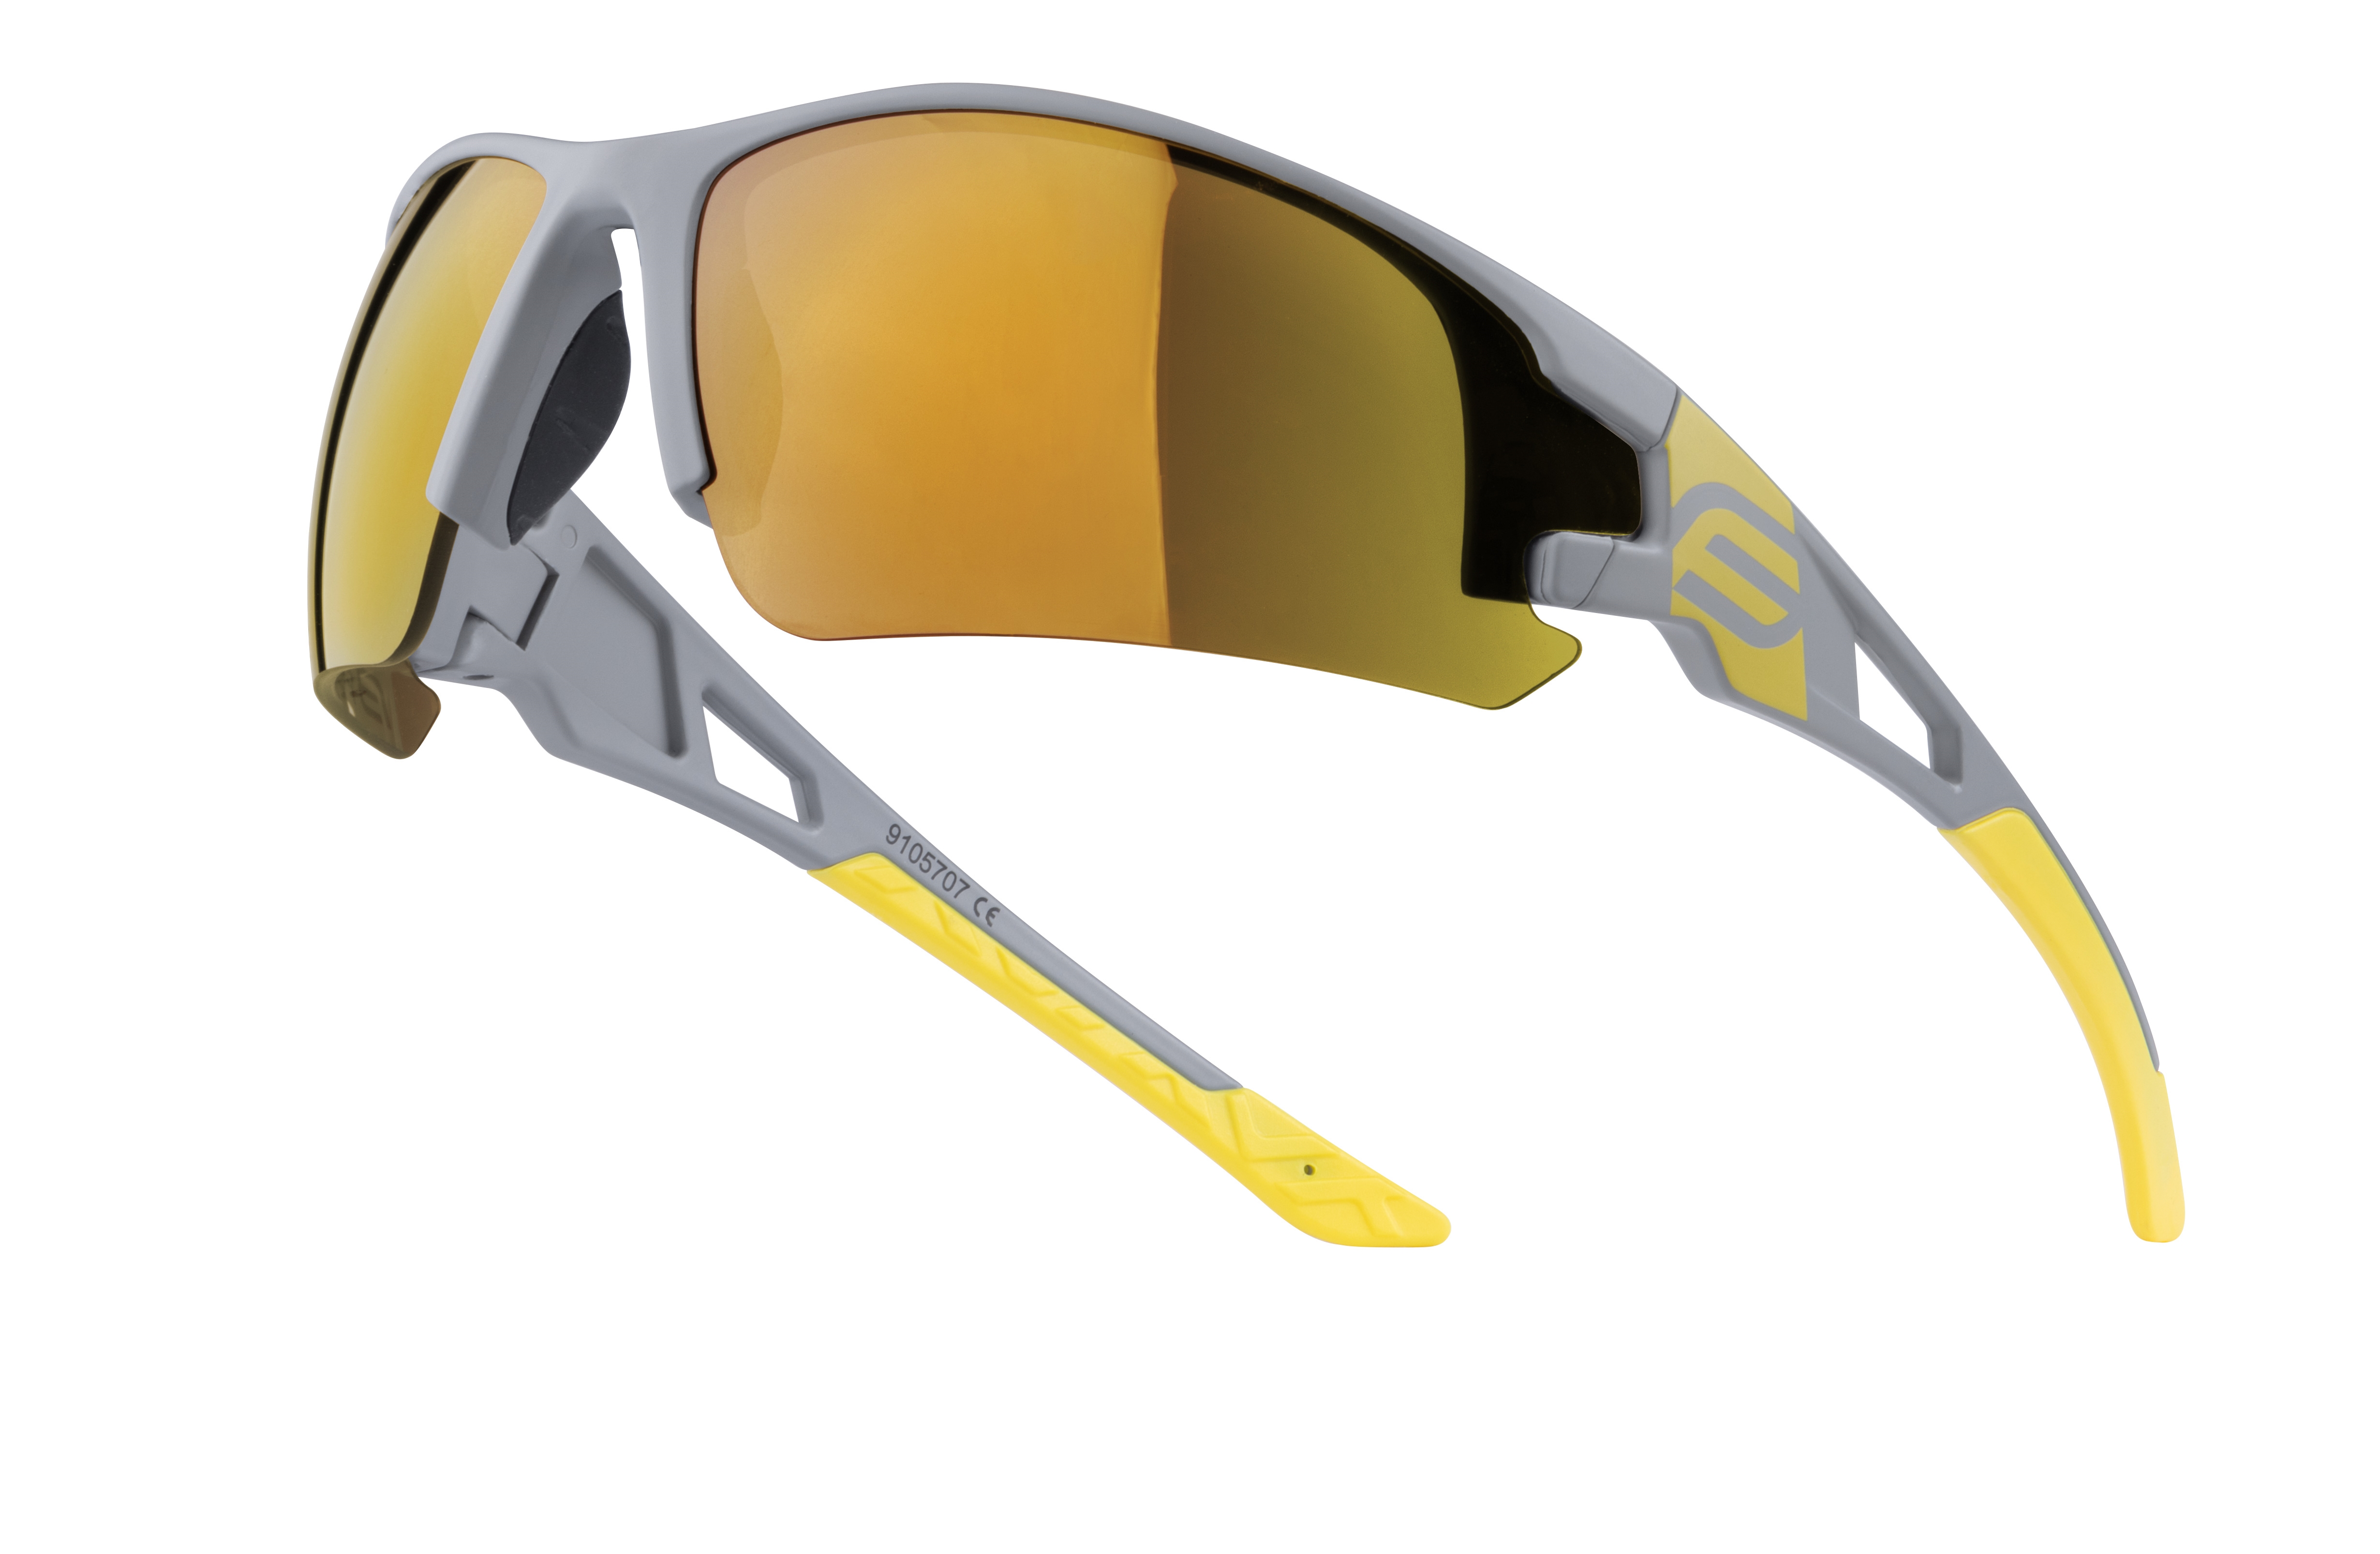 brýle FORCE CALIBRE šedo-žluté, žlutá zrc. skla varianta: barva: žlutá, skla: polykarbonátová, určení: cyklistické, Řada: Red line